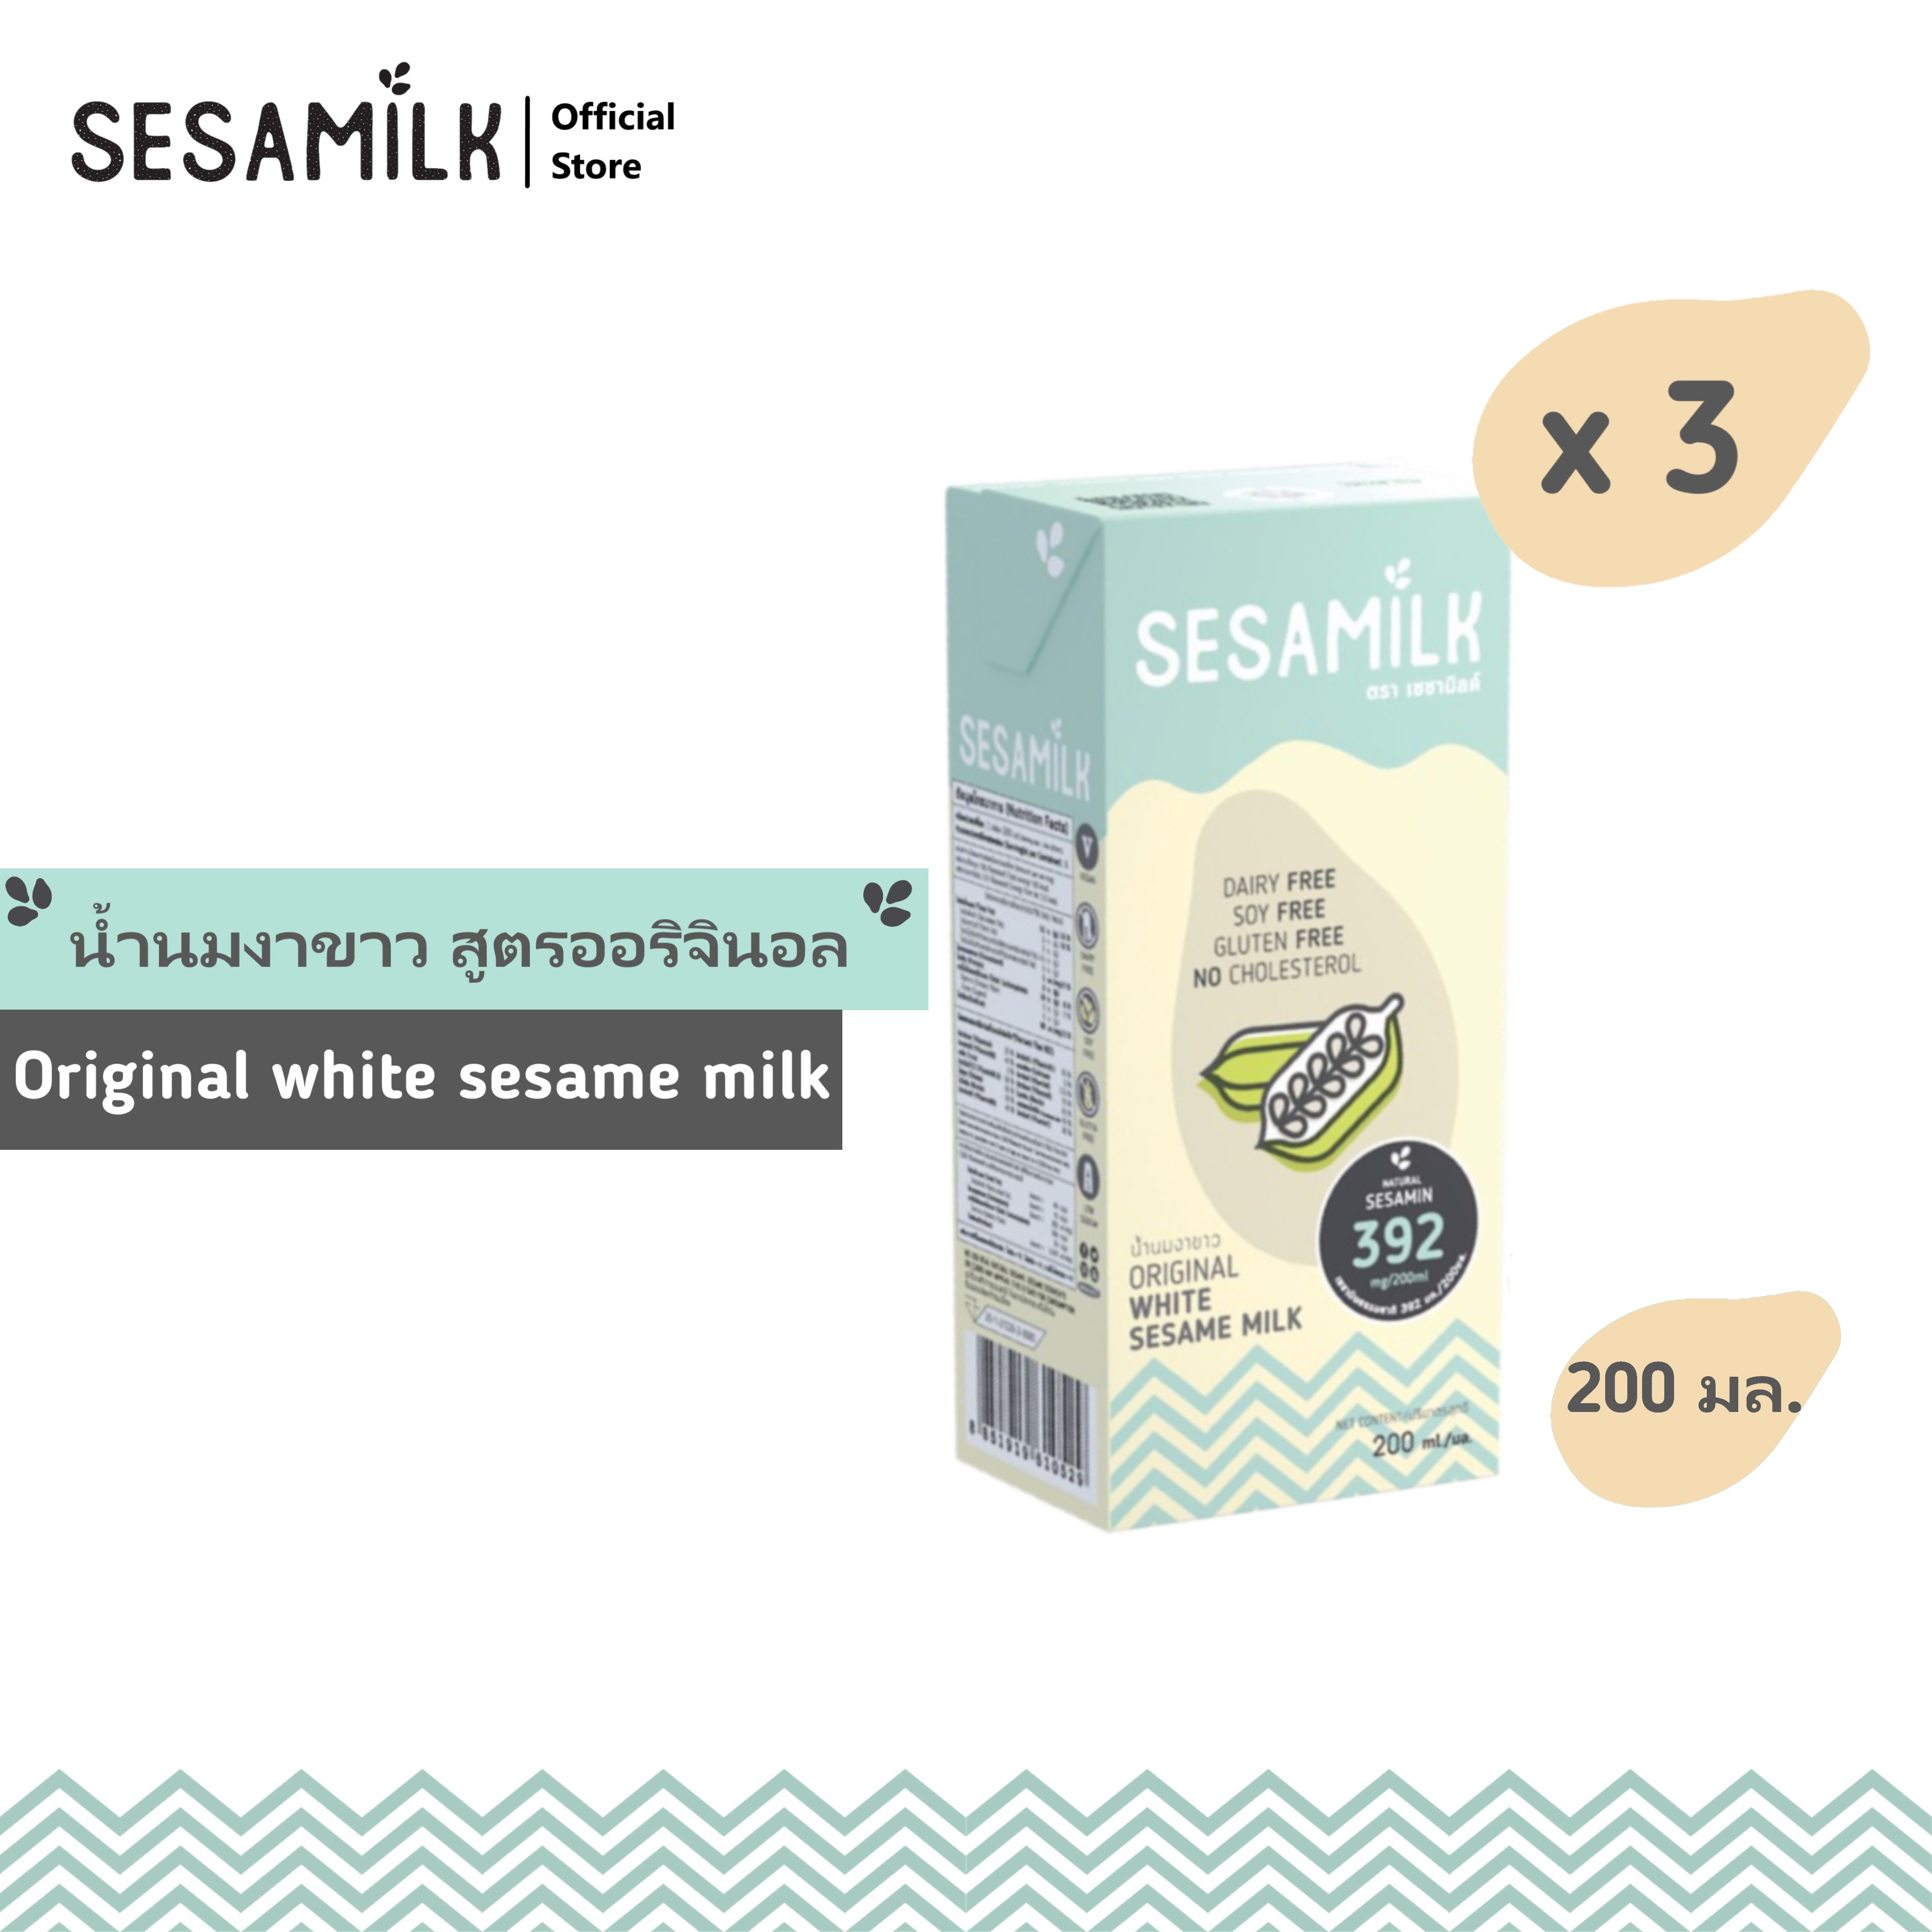 เซซามิลค์ น้ำนมงาขาว สูตรออรินัล  200ml x 3 กล่อง Sesamilk Original White sesame milk 200ml x 3 boxes